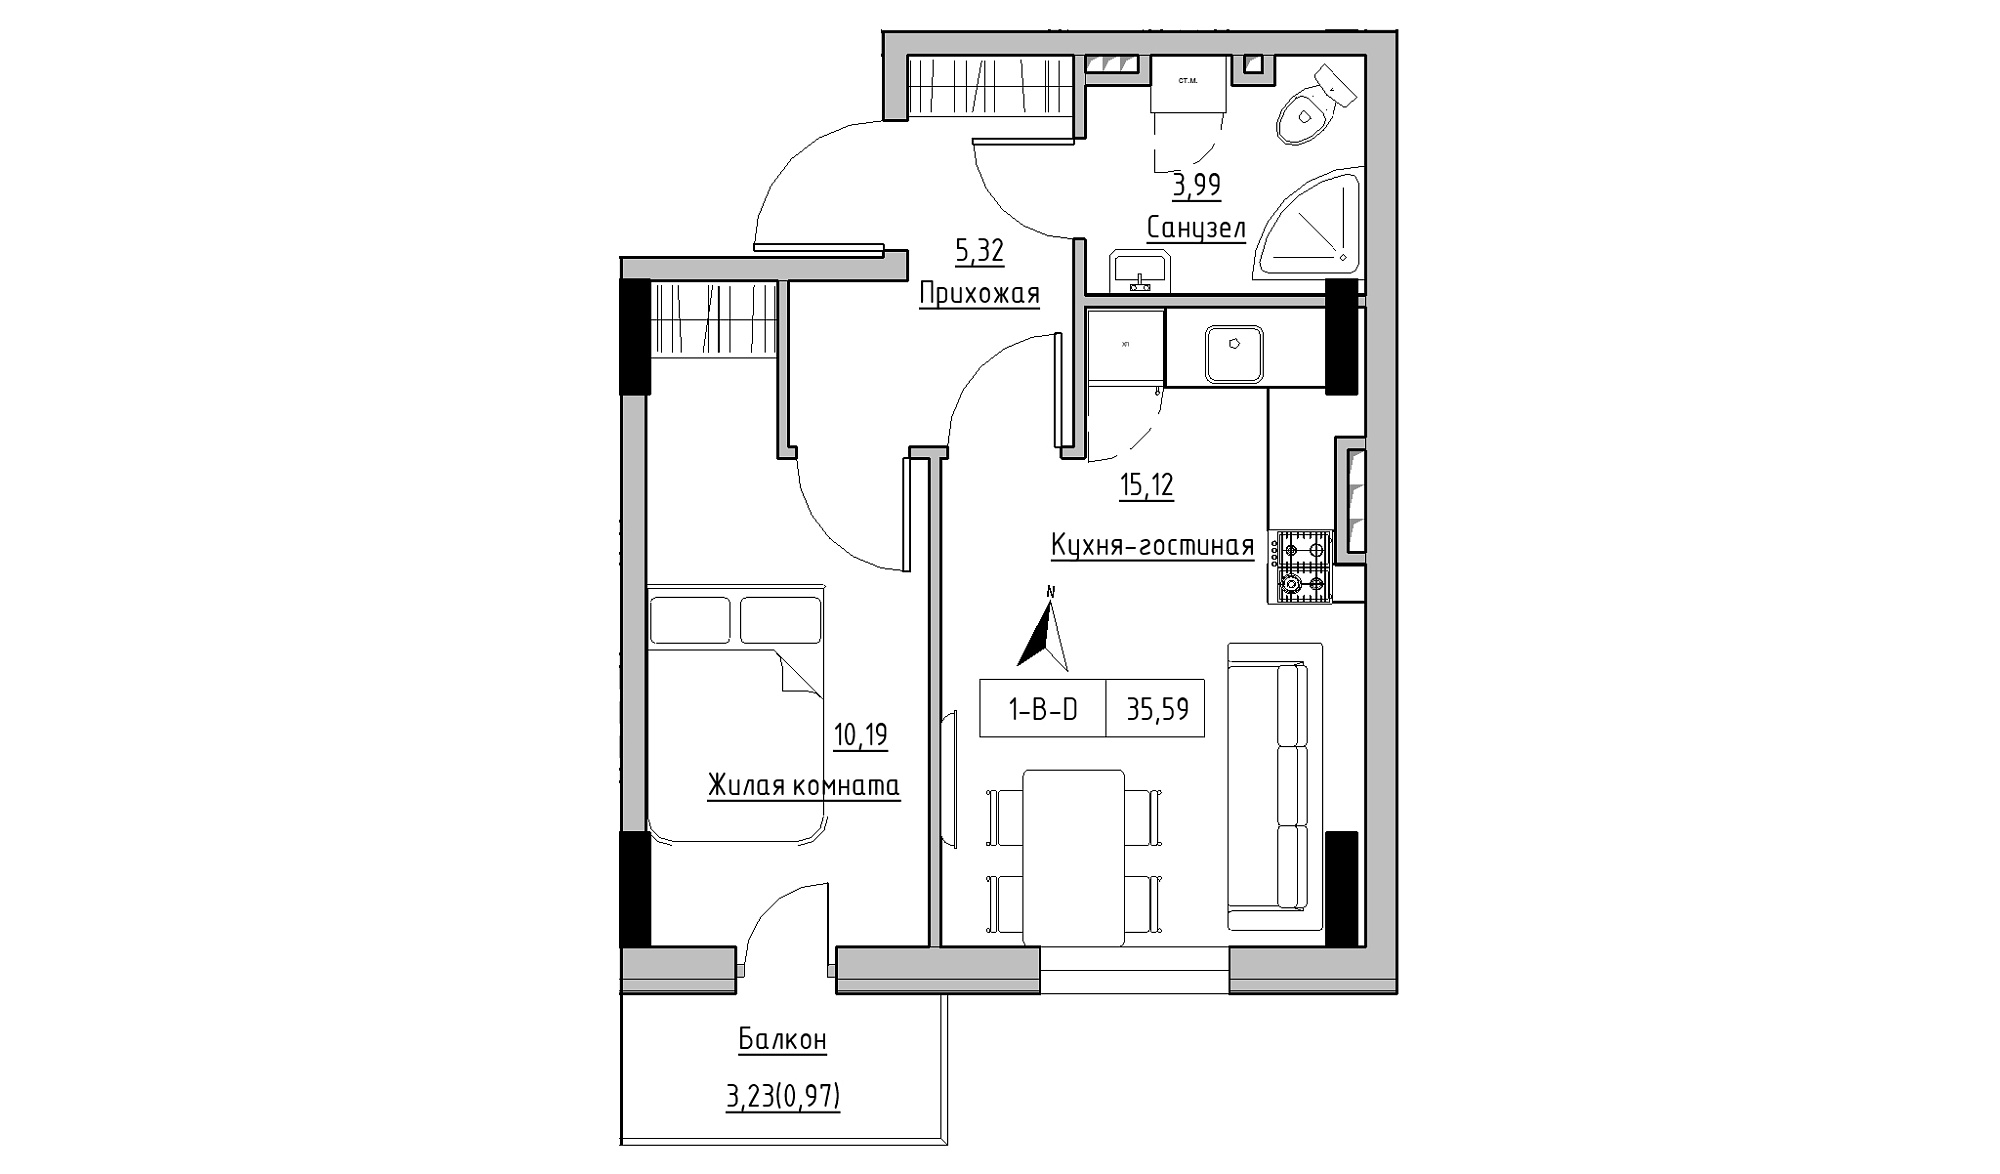 Планування 1-к квартира площею 35.59м2, KS-025-03/0011.